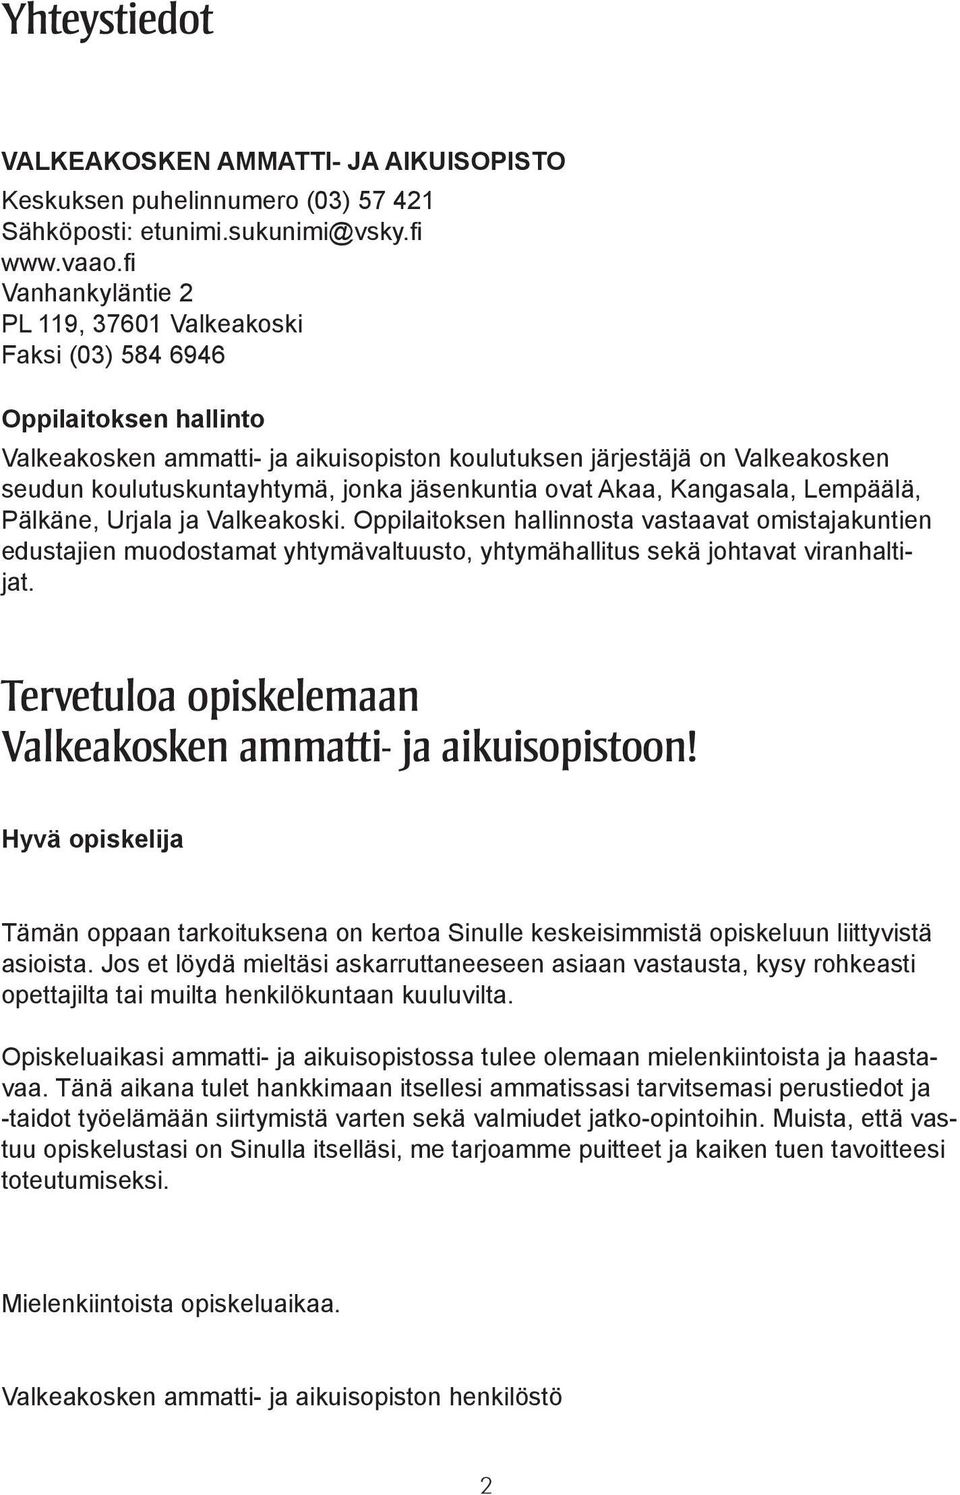 jonka jäsenkuntia ovat Akaa, Kangasala, Lempäälä, Pälkäne, Urjala ja Valkeakoski.